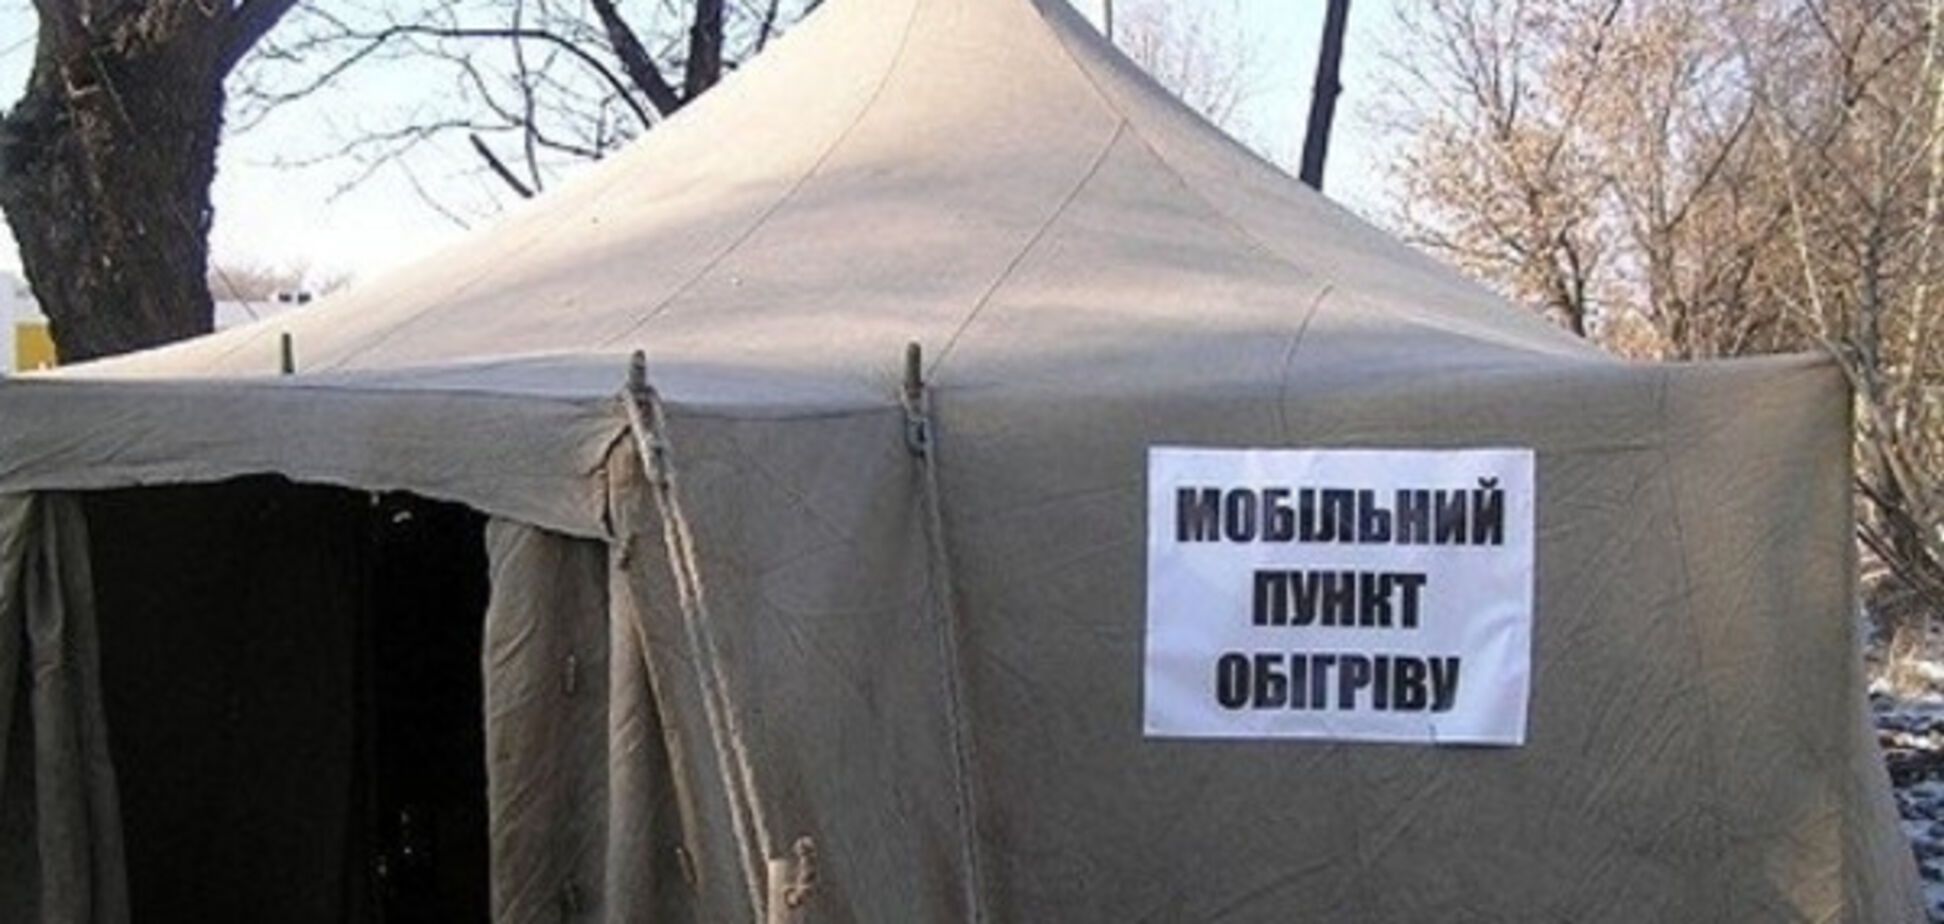 Тепло и сытно: в Одессе откроют пункт обогрева для бездомных